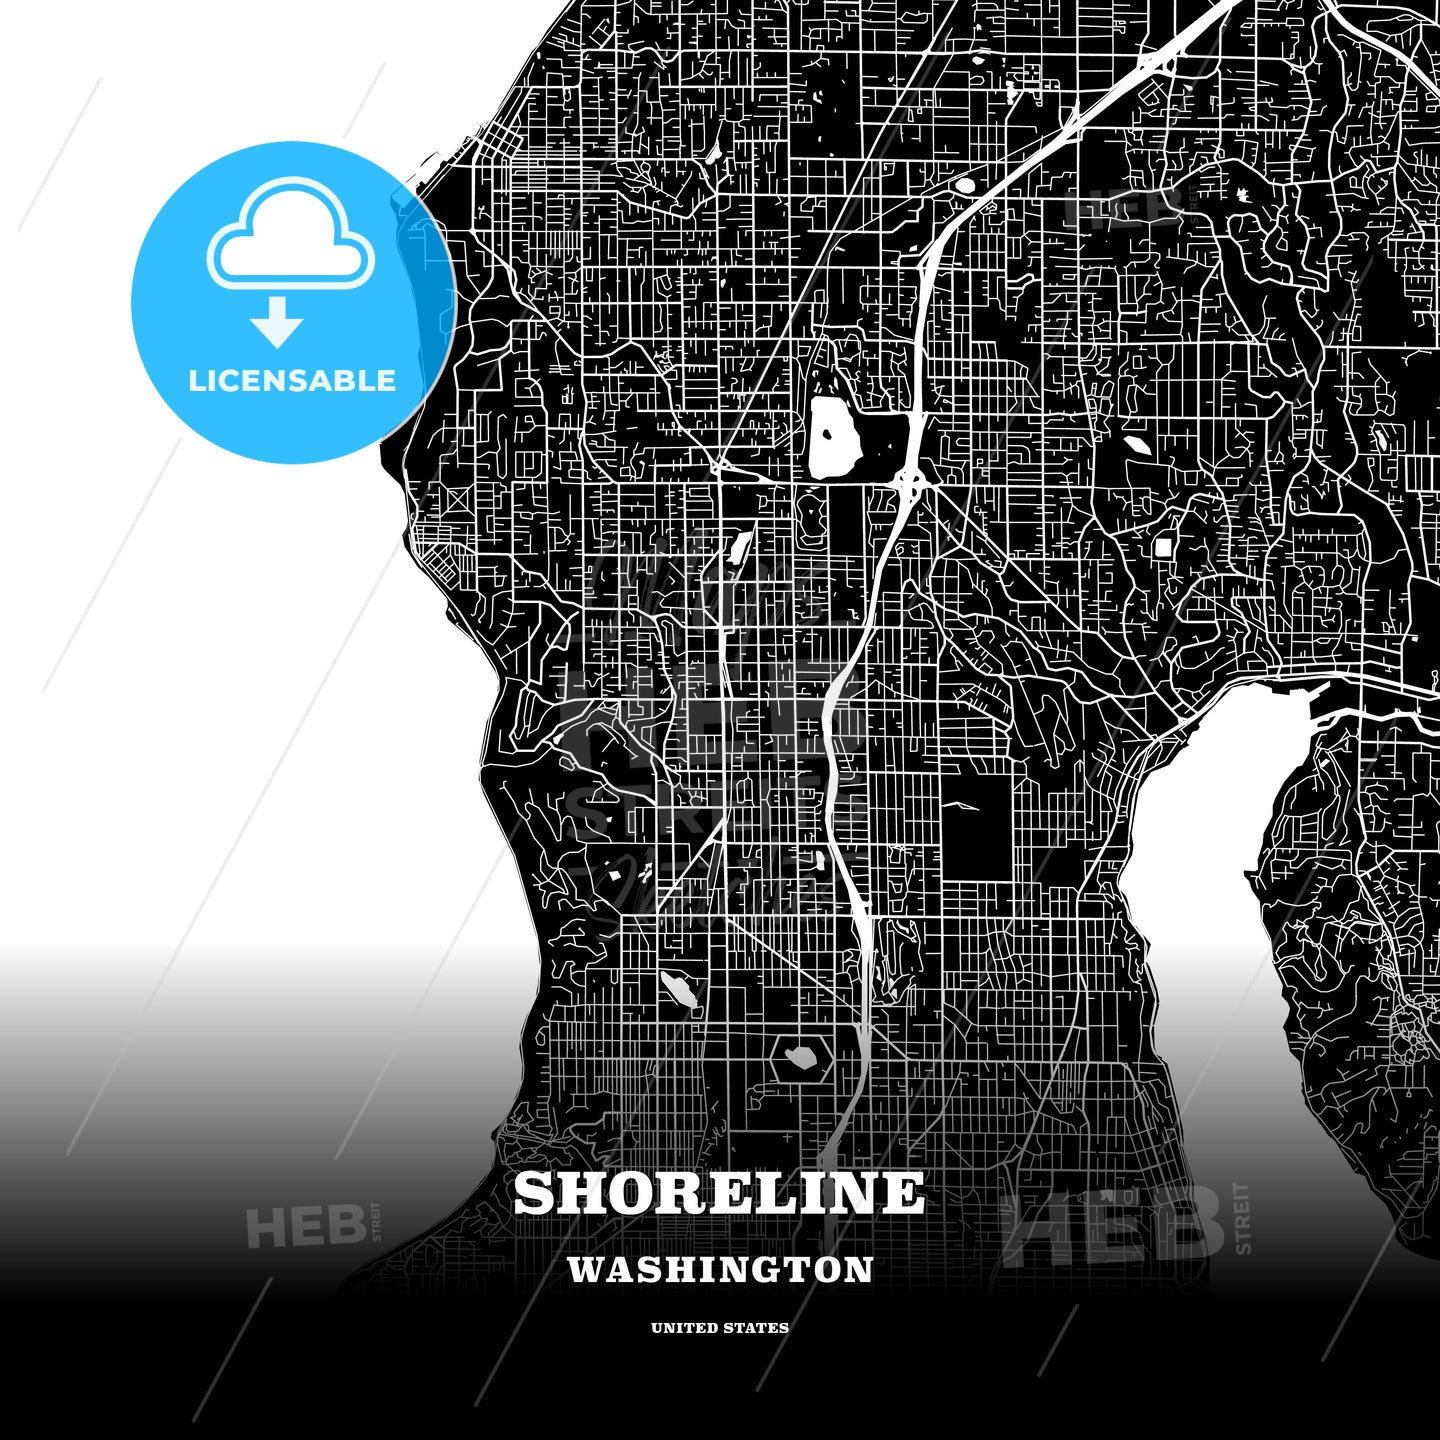 Shoreline, Washington, USA map